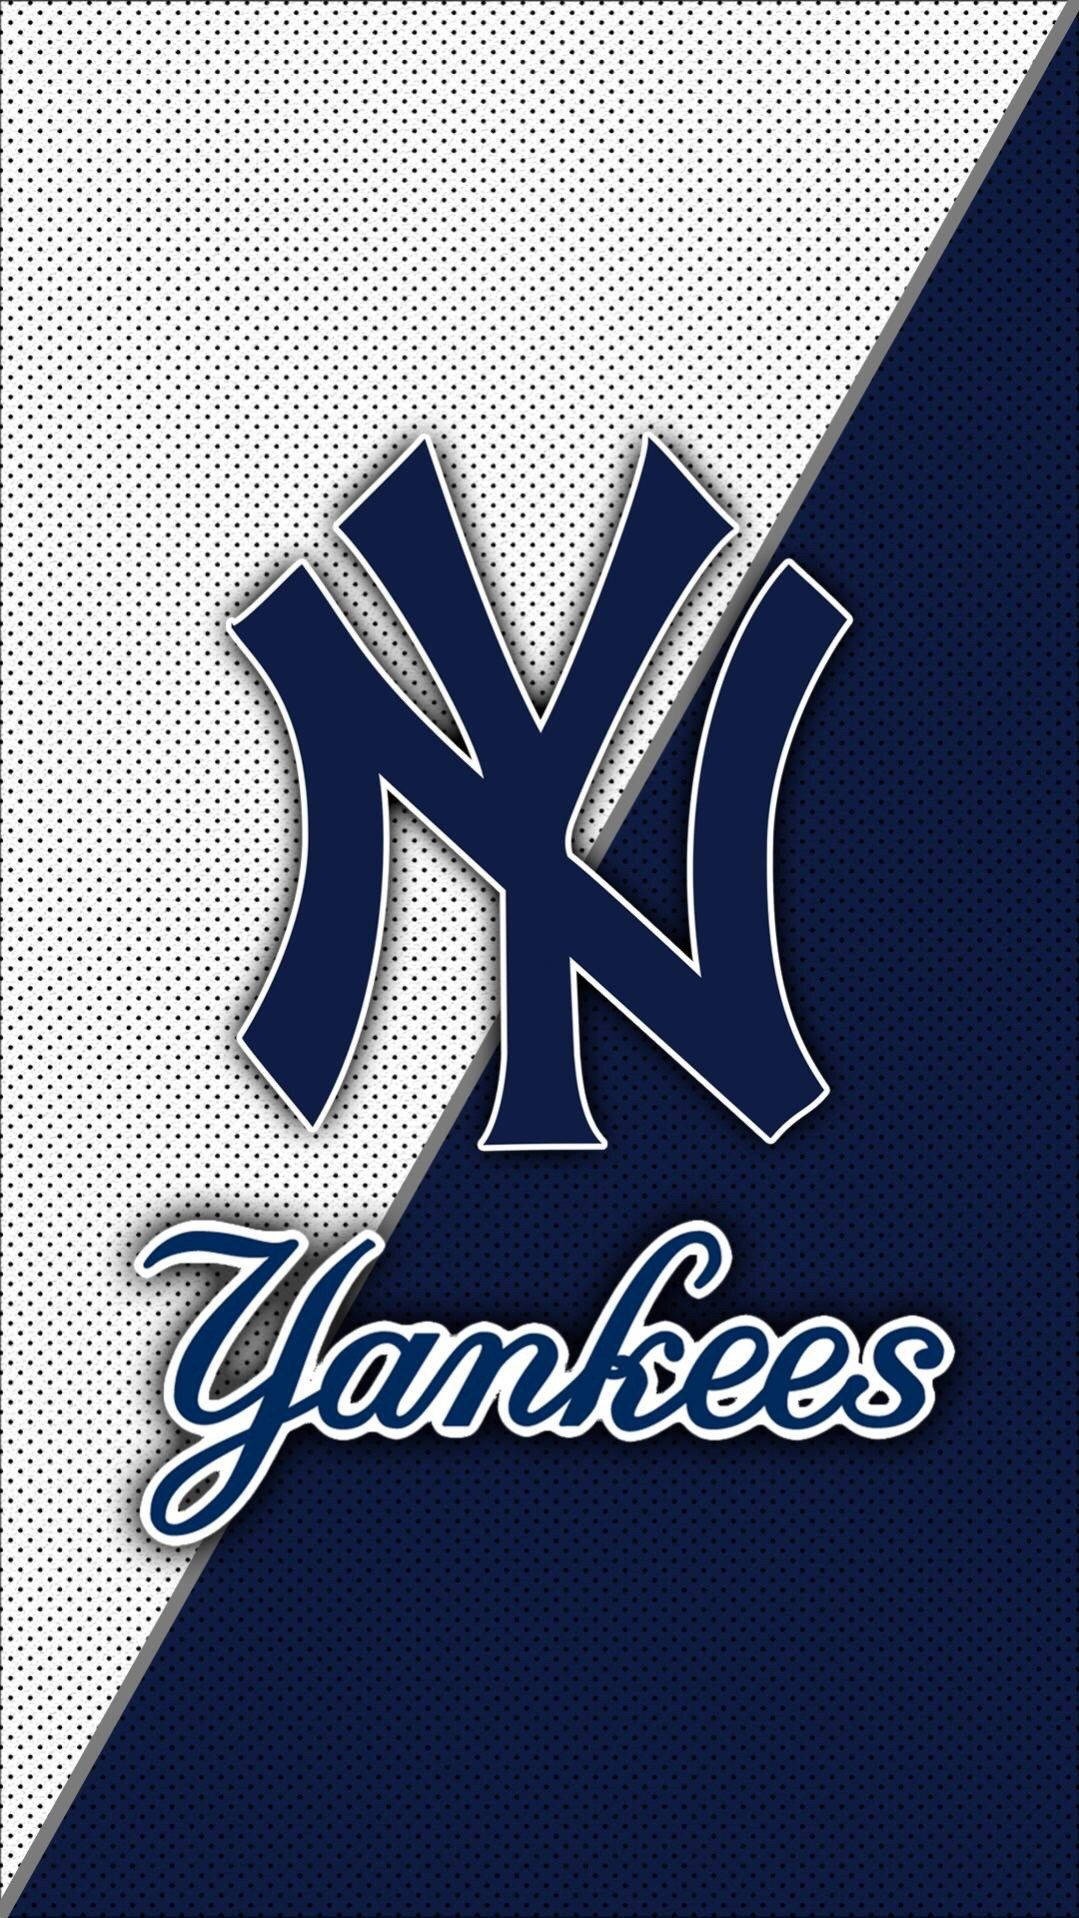 Plus New York Yankees Iphone Wallpaper - New York Yankees